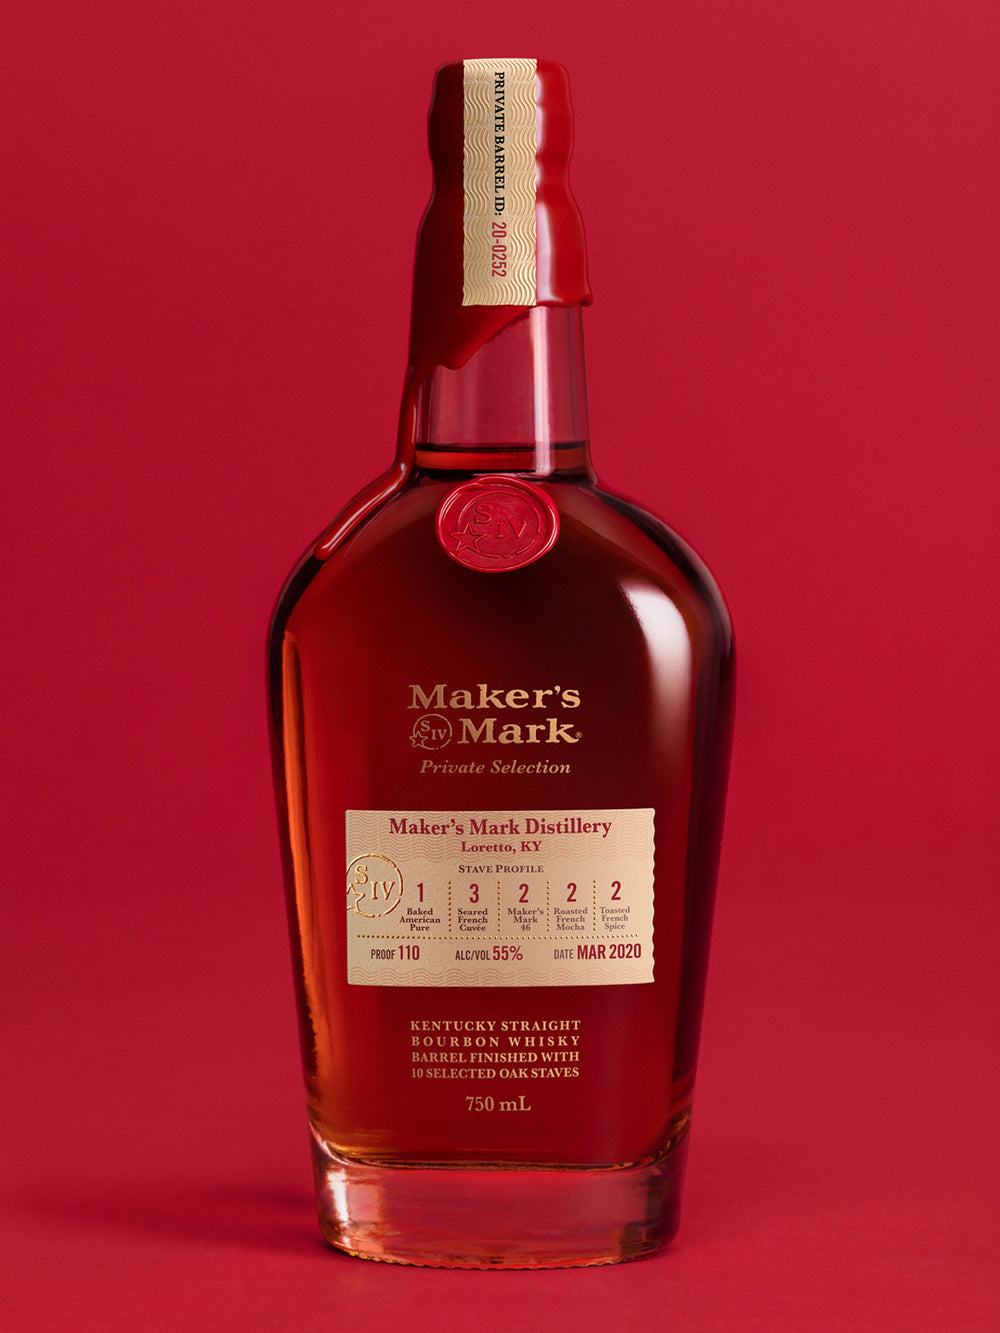 Maker's Mark Private Select Bourbon Whisky -750ml